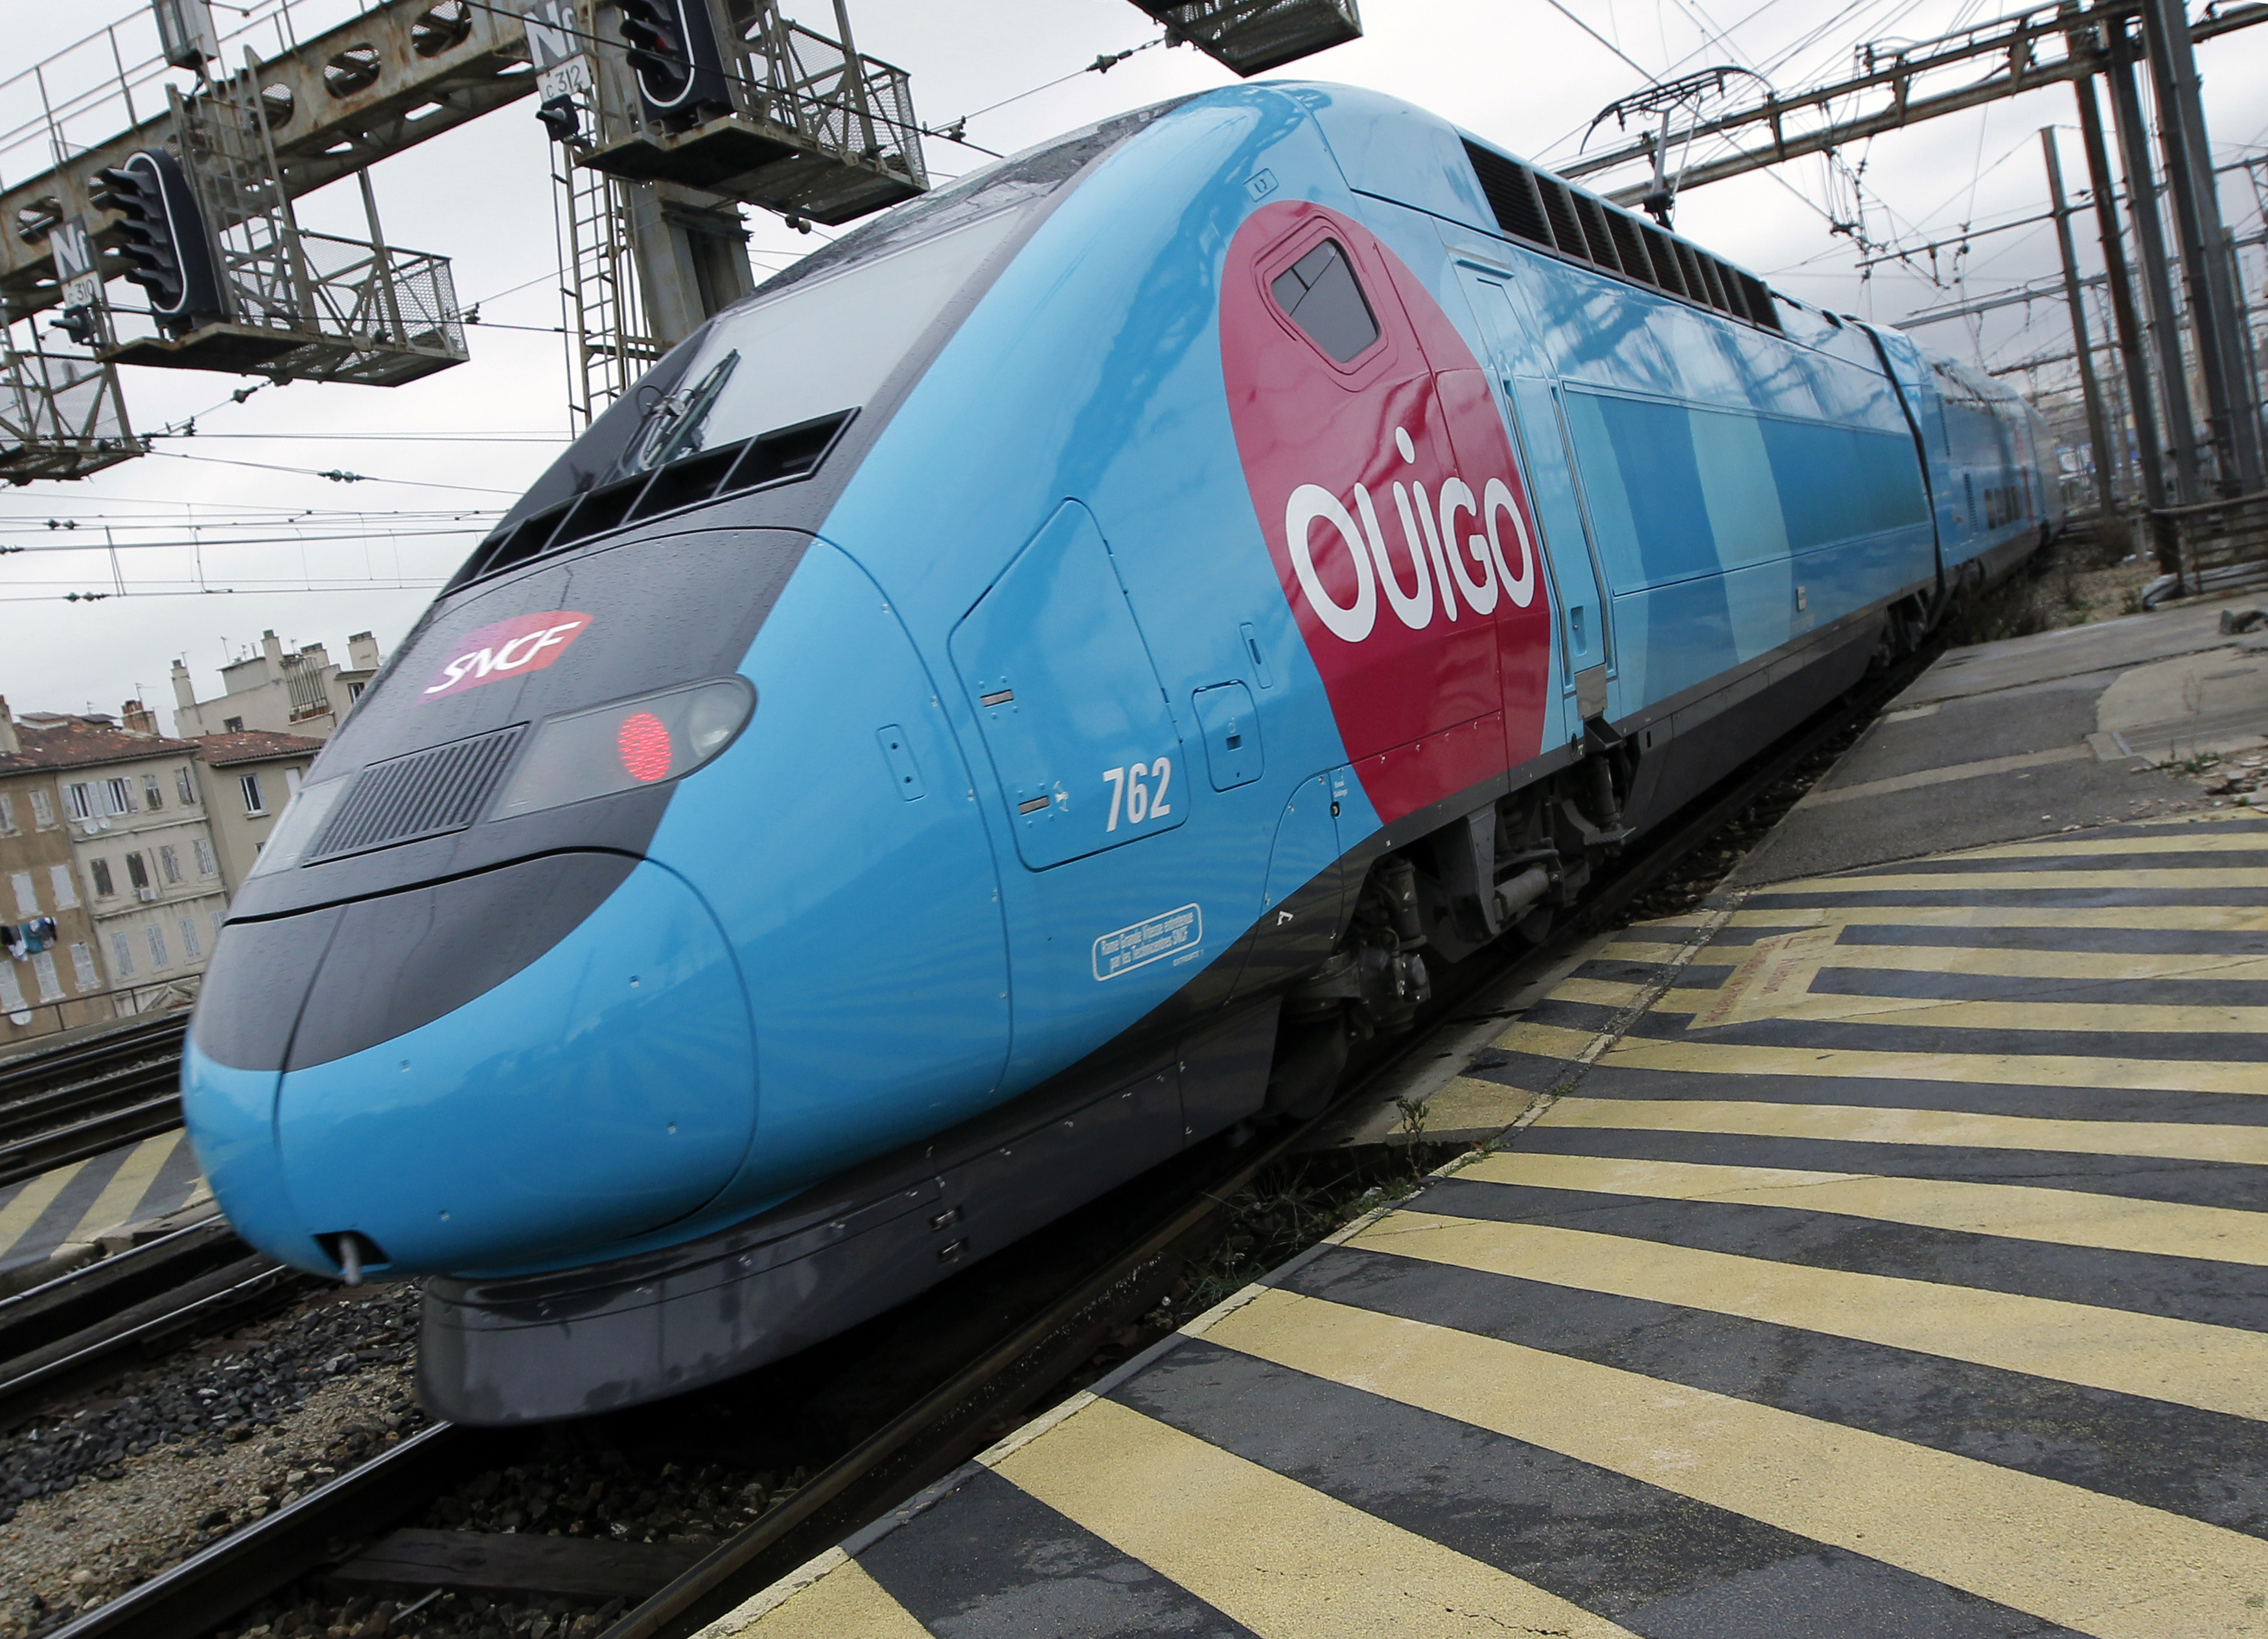 Après la sortie de Clément Beaune contre les tarifs trop bas de l'aérien, la SNCF lance des billets à 10 euros sur Ouigo